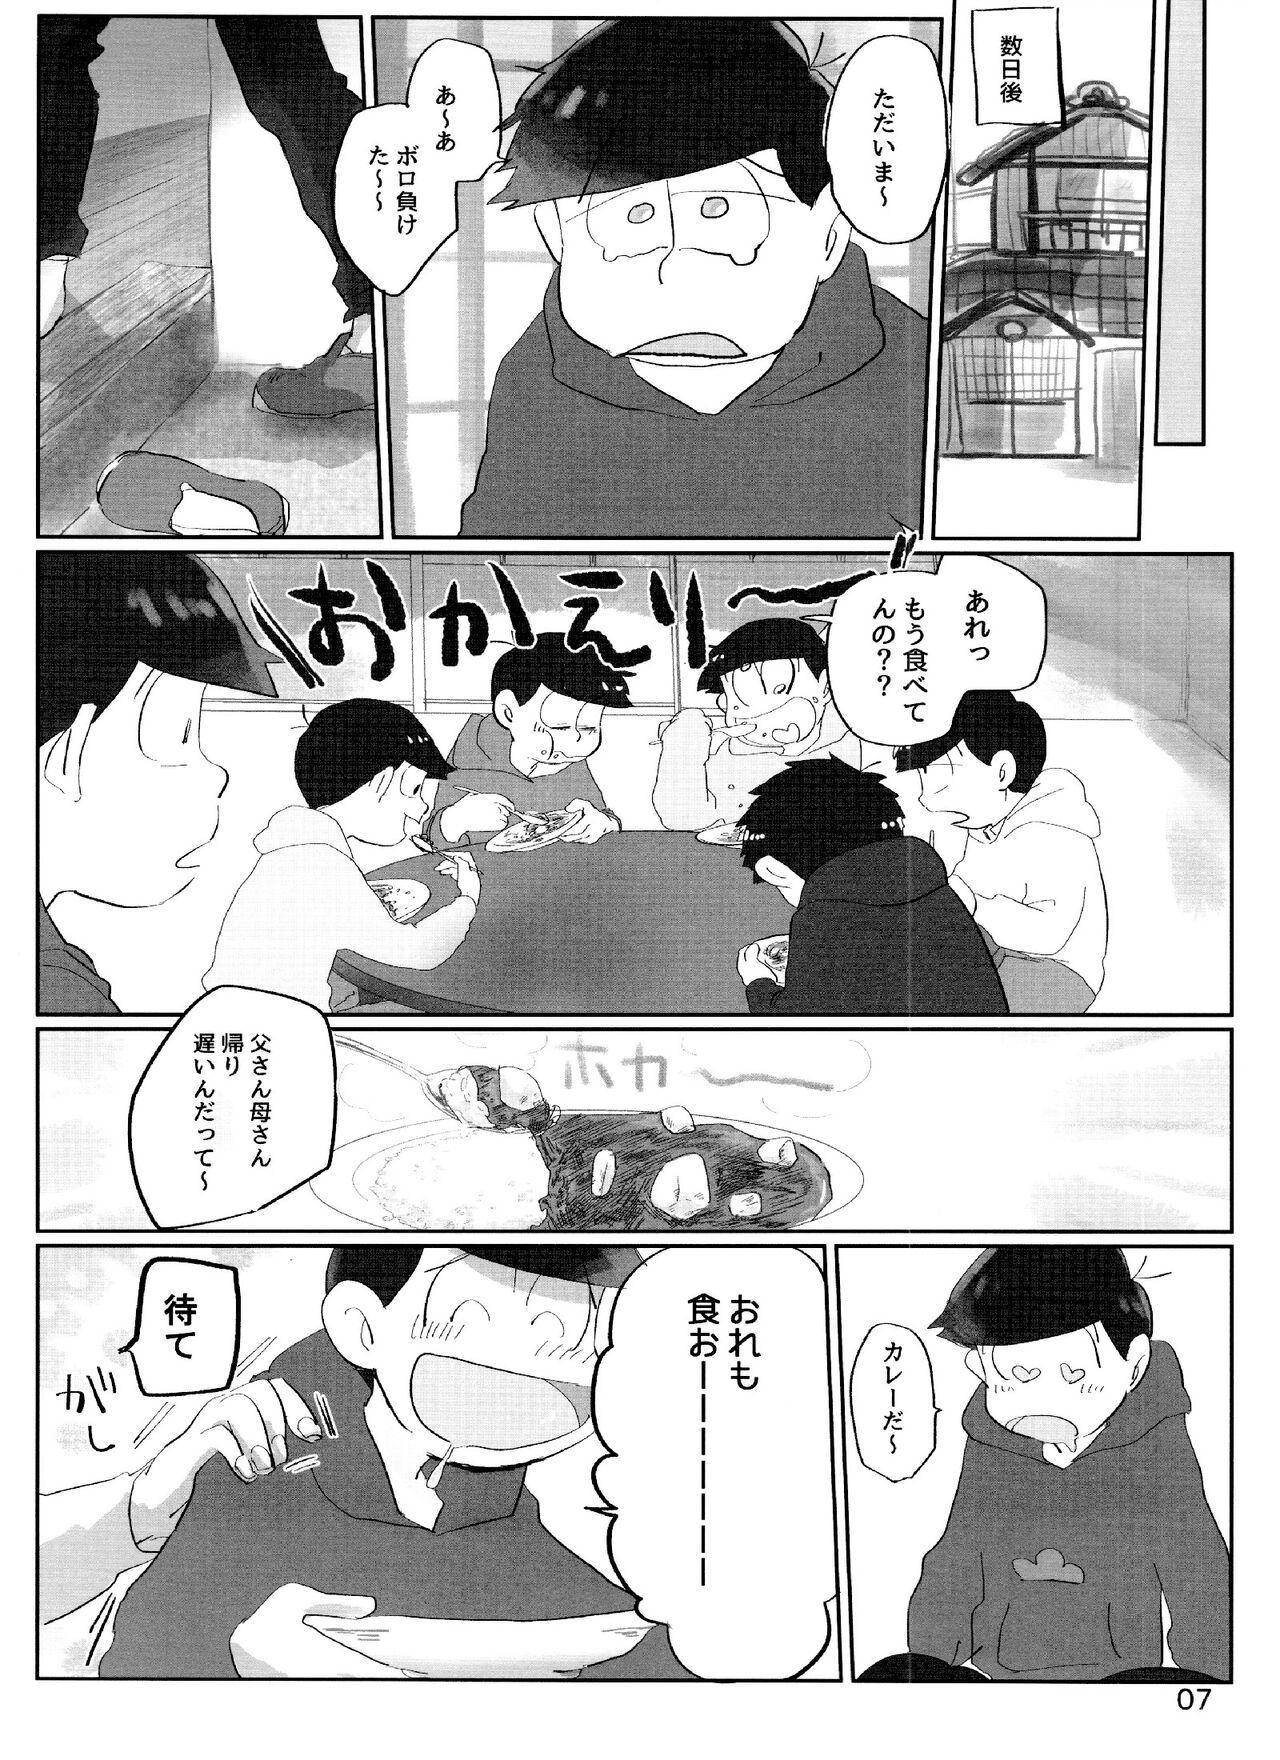 Teasing yoi kono × × hon - Osomatsu san Face Fuck - Page 7